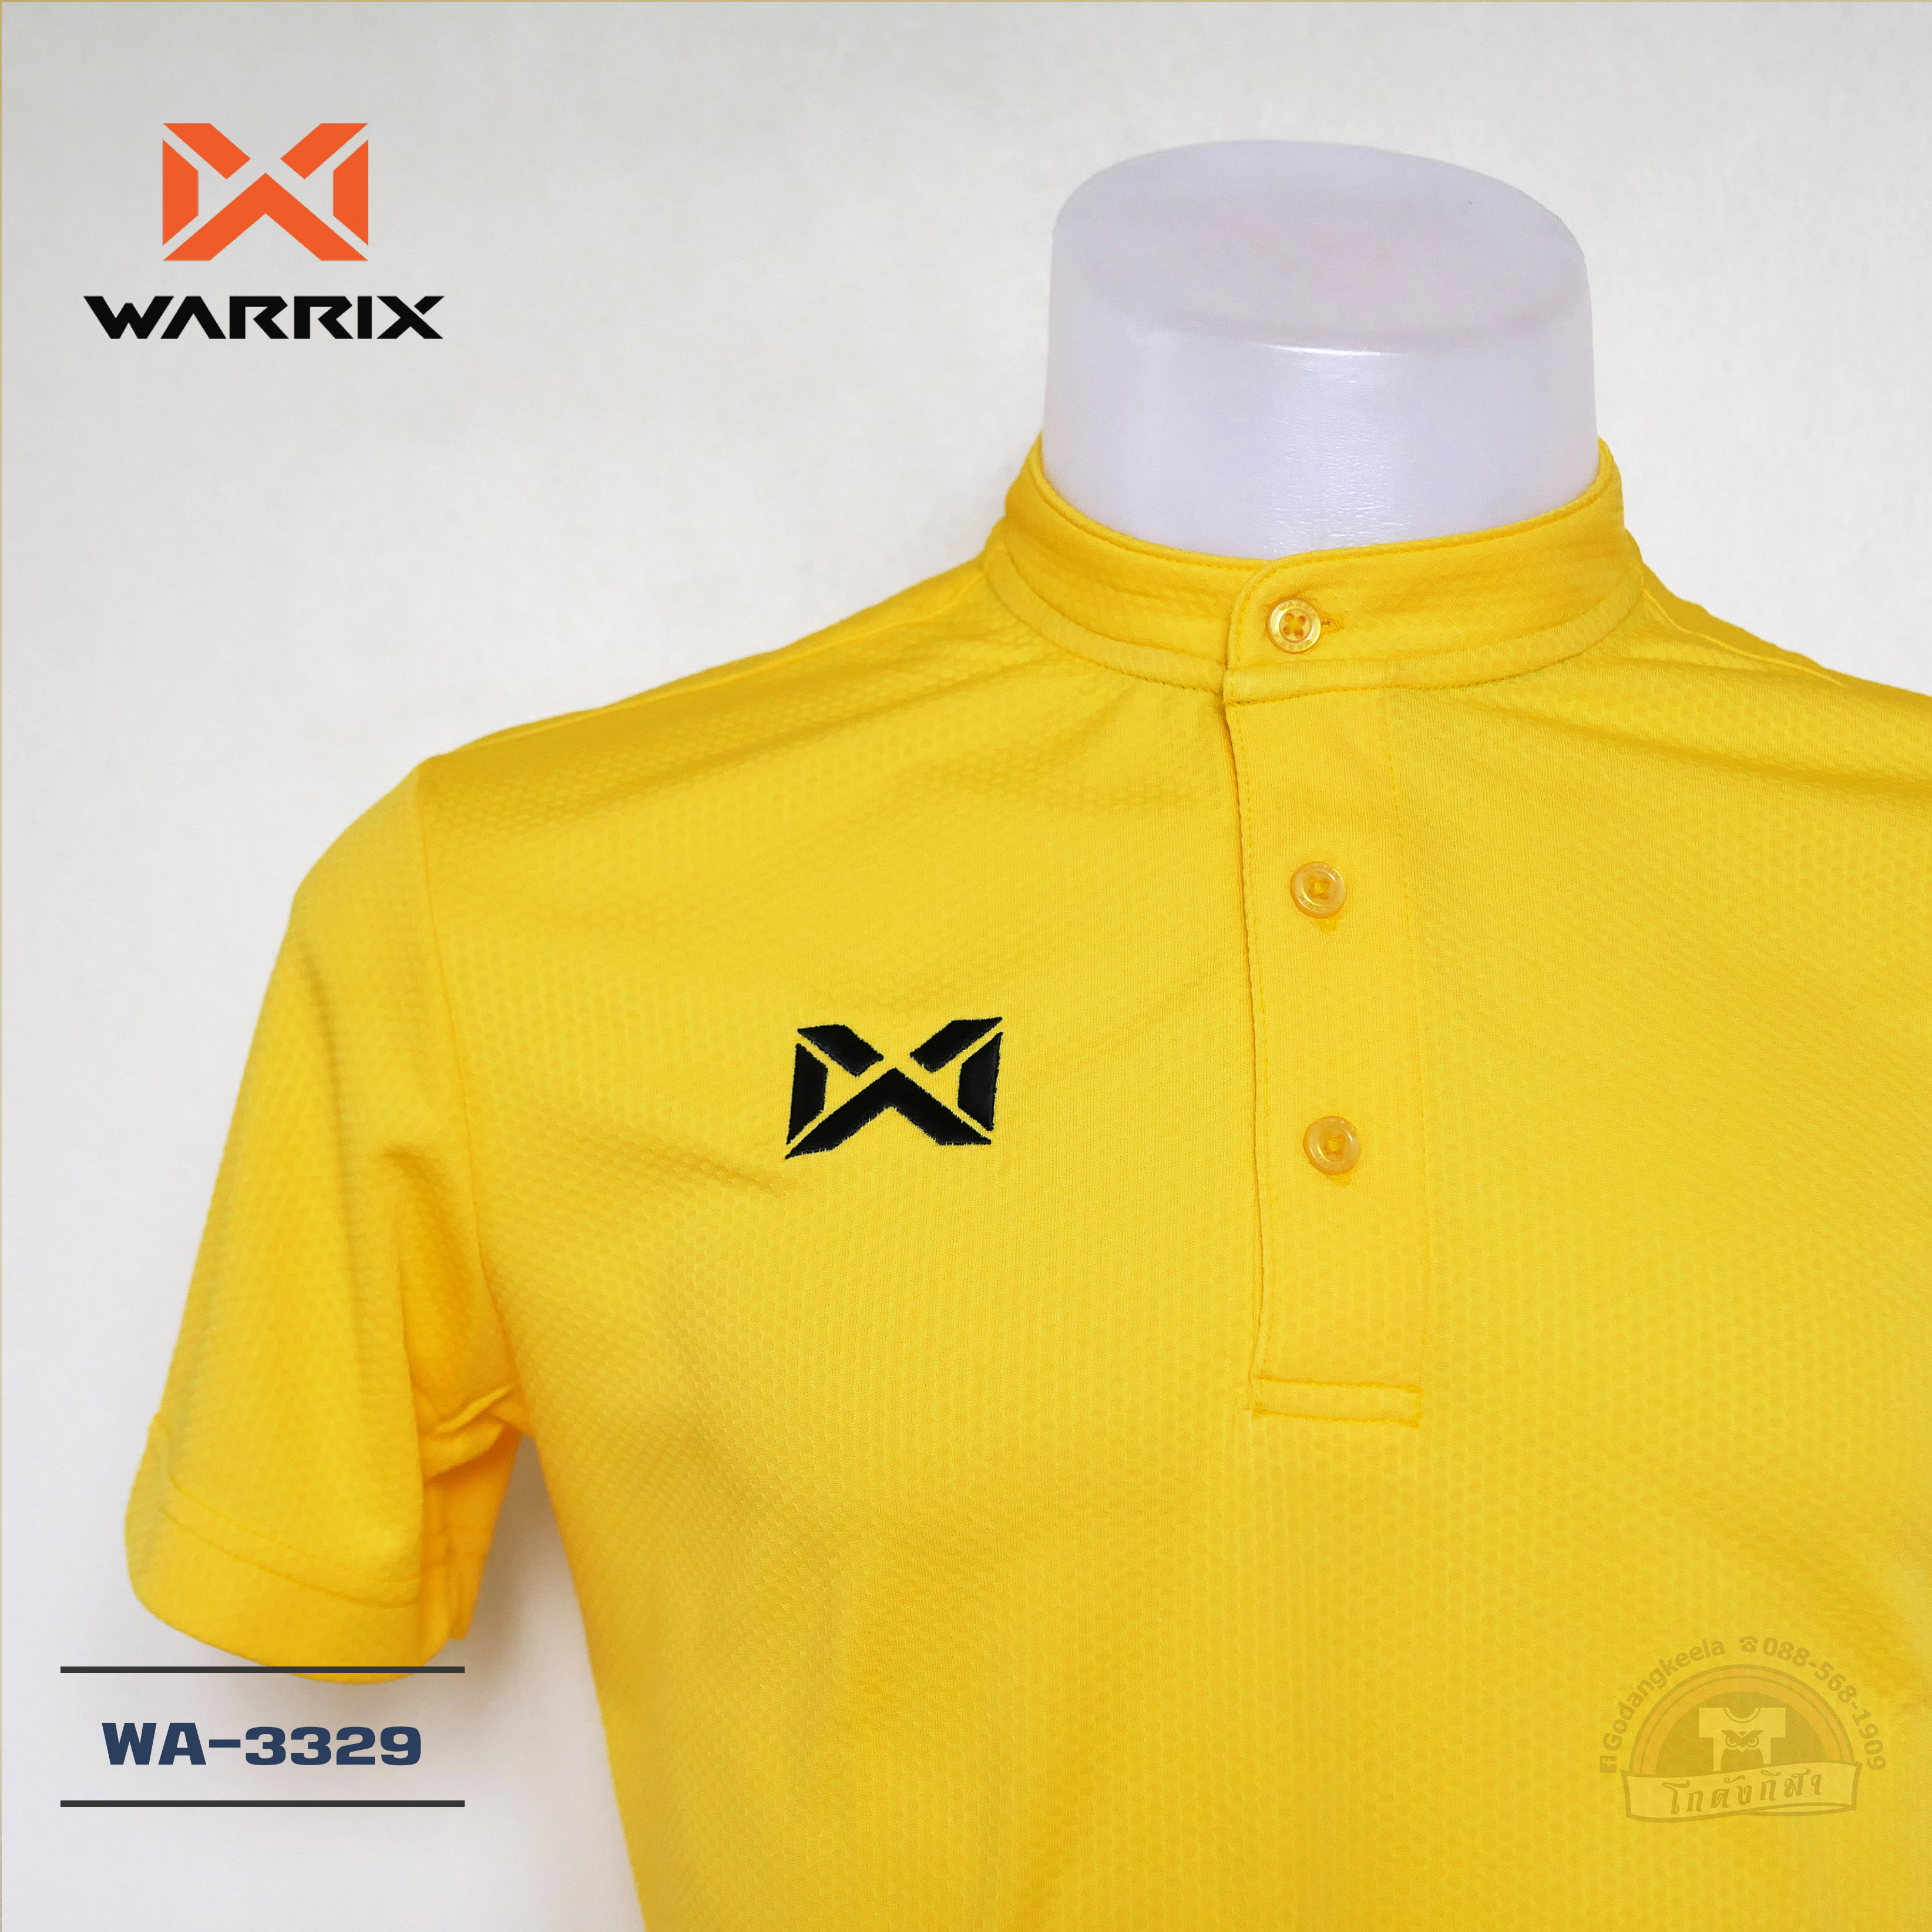 WARRIX เสื้อโปโล คอจีน WA-3329 สีเหลือง YY วาริกซ์ วอริกซ์ ของแท้ 100%